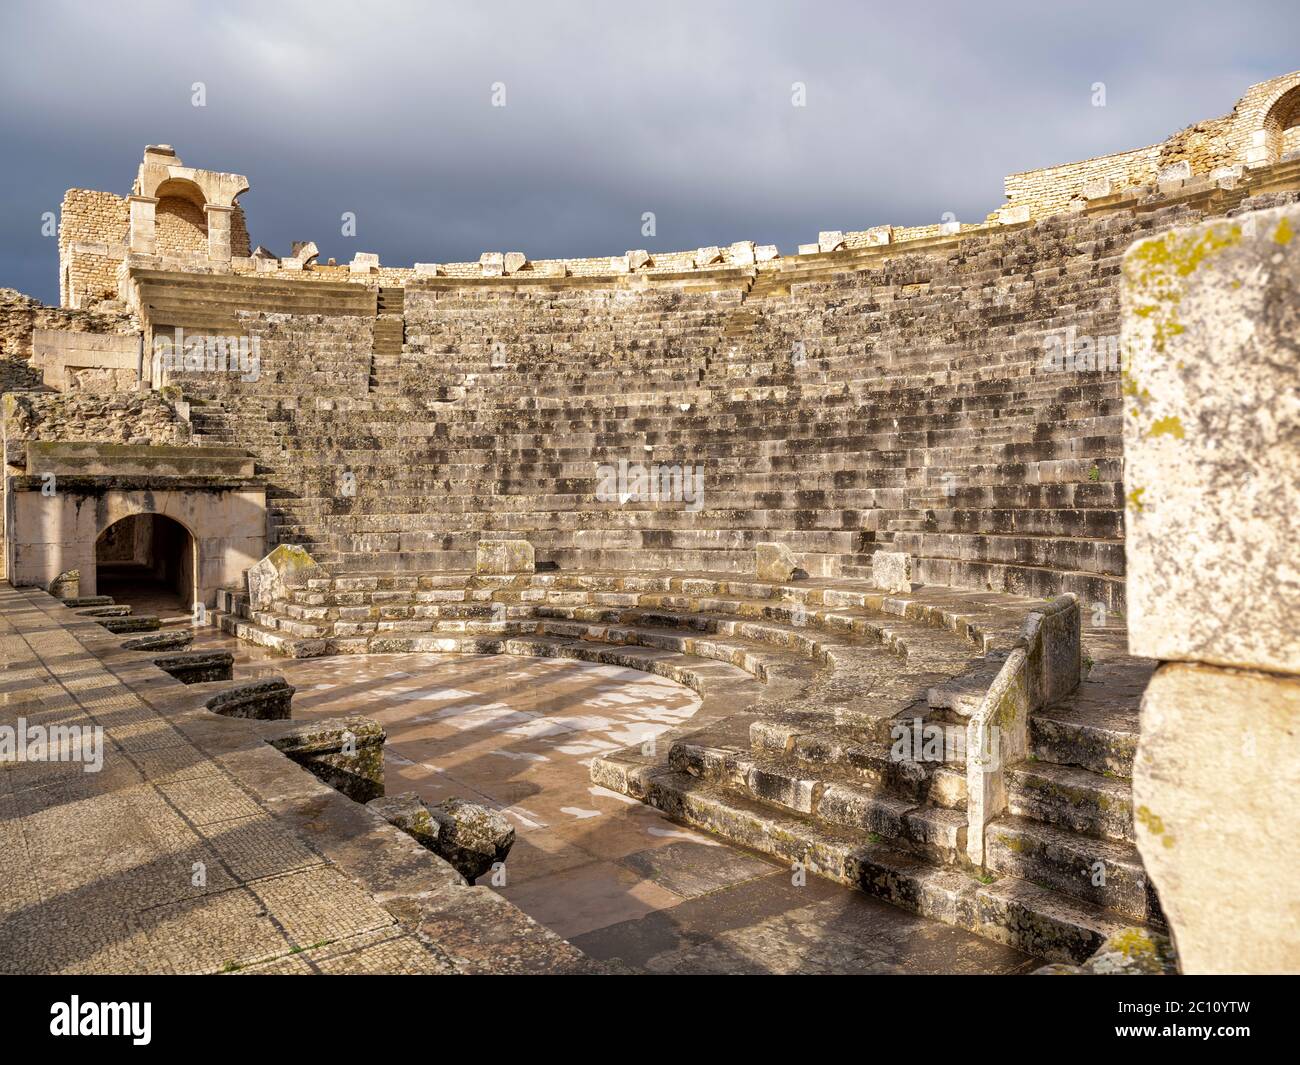 Die antike römische archäologische Stätte von Dougga (Thugga), Tunesien mit einem der am besten erhaltenen Amphitheater in Nordafrika Stockfoto